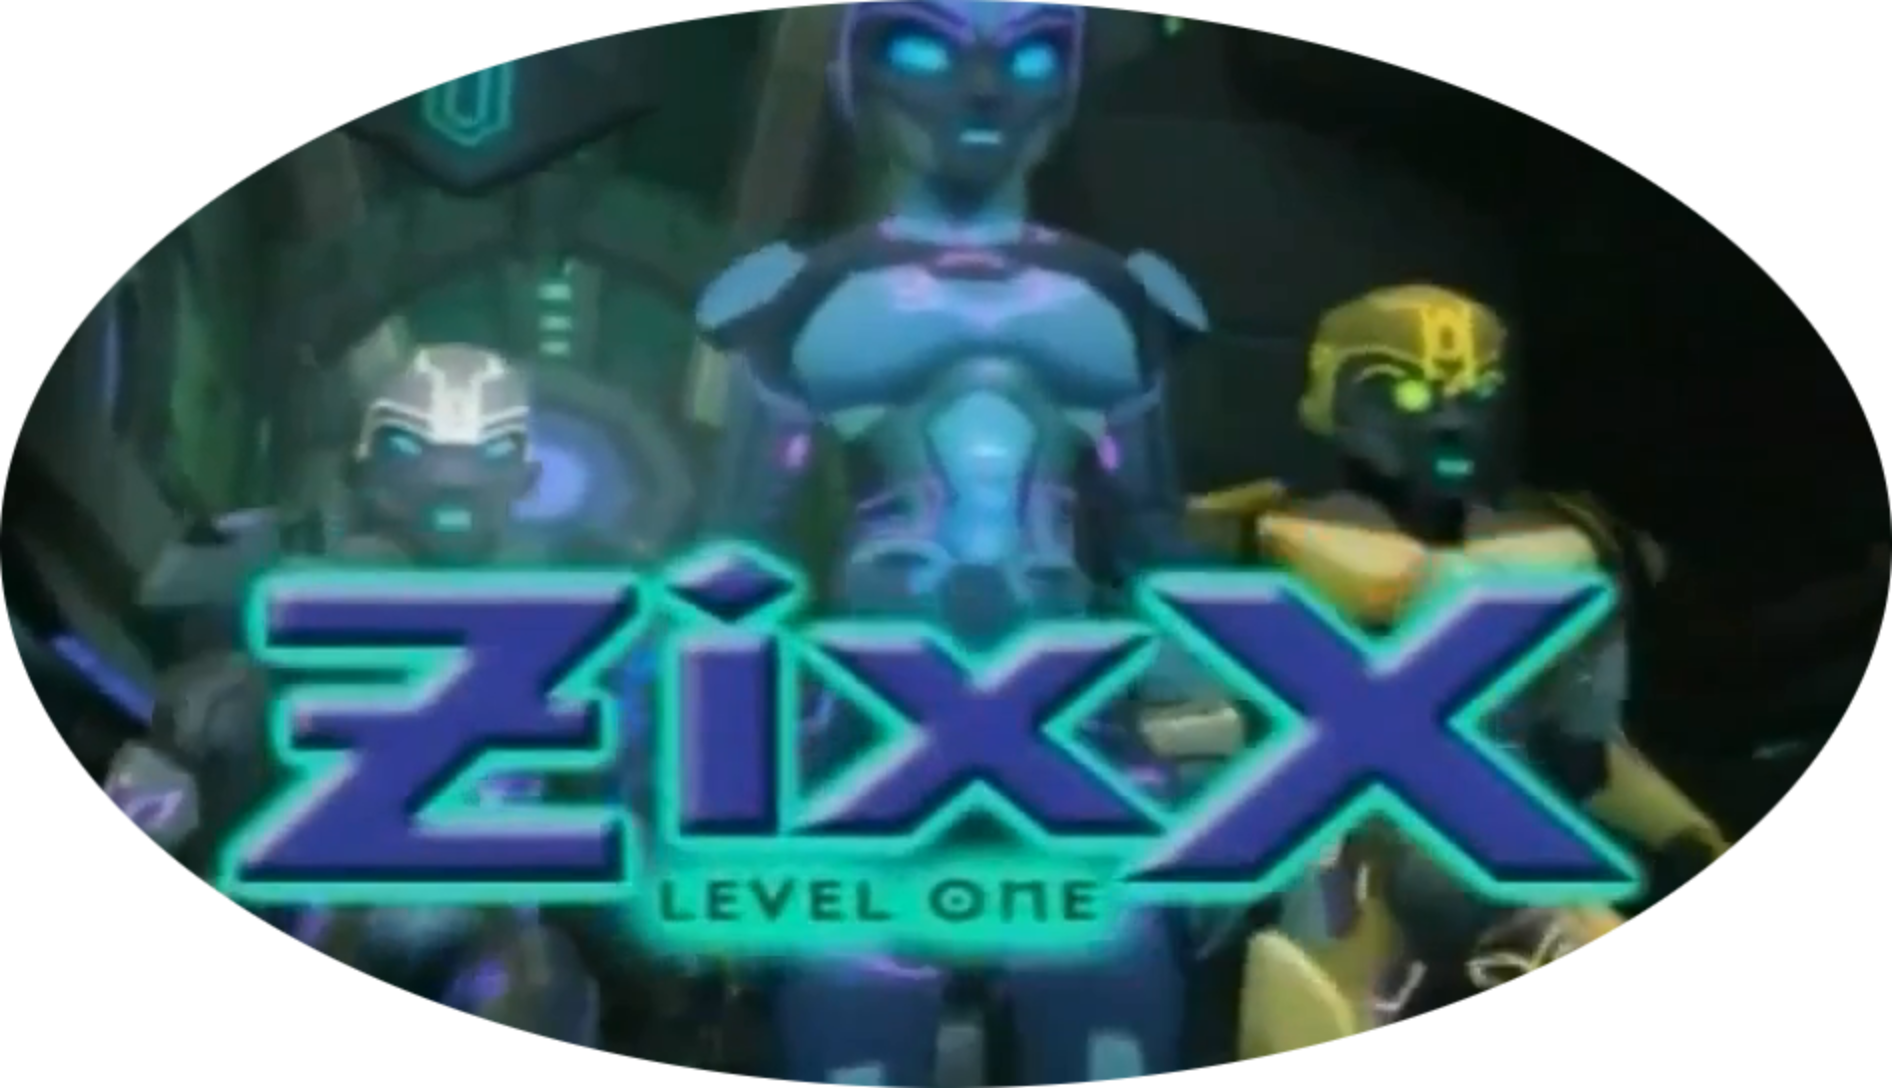 Zixx Level One 